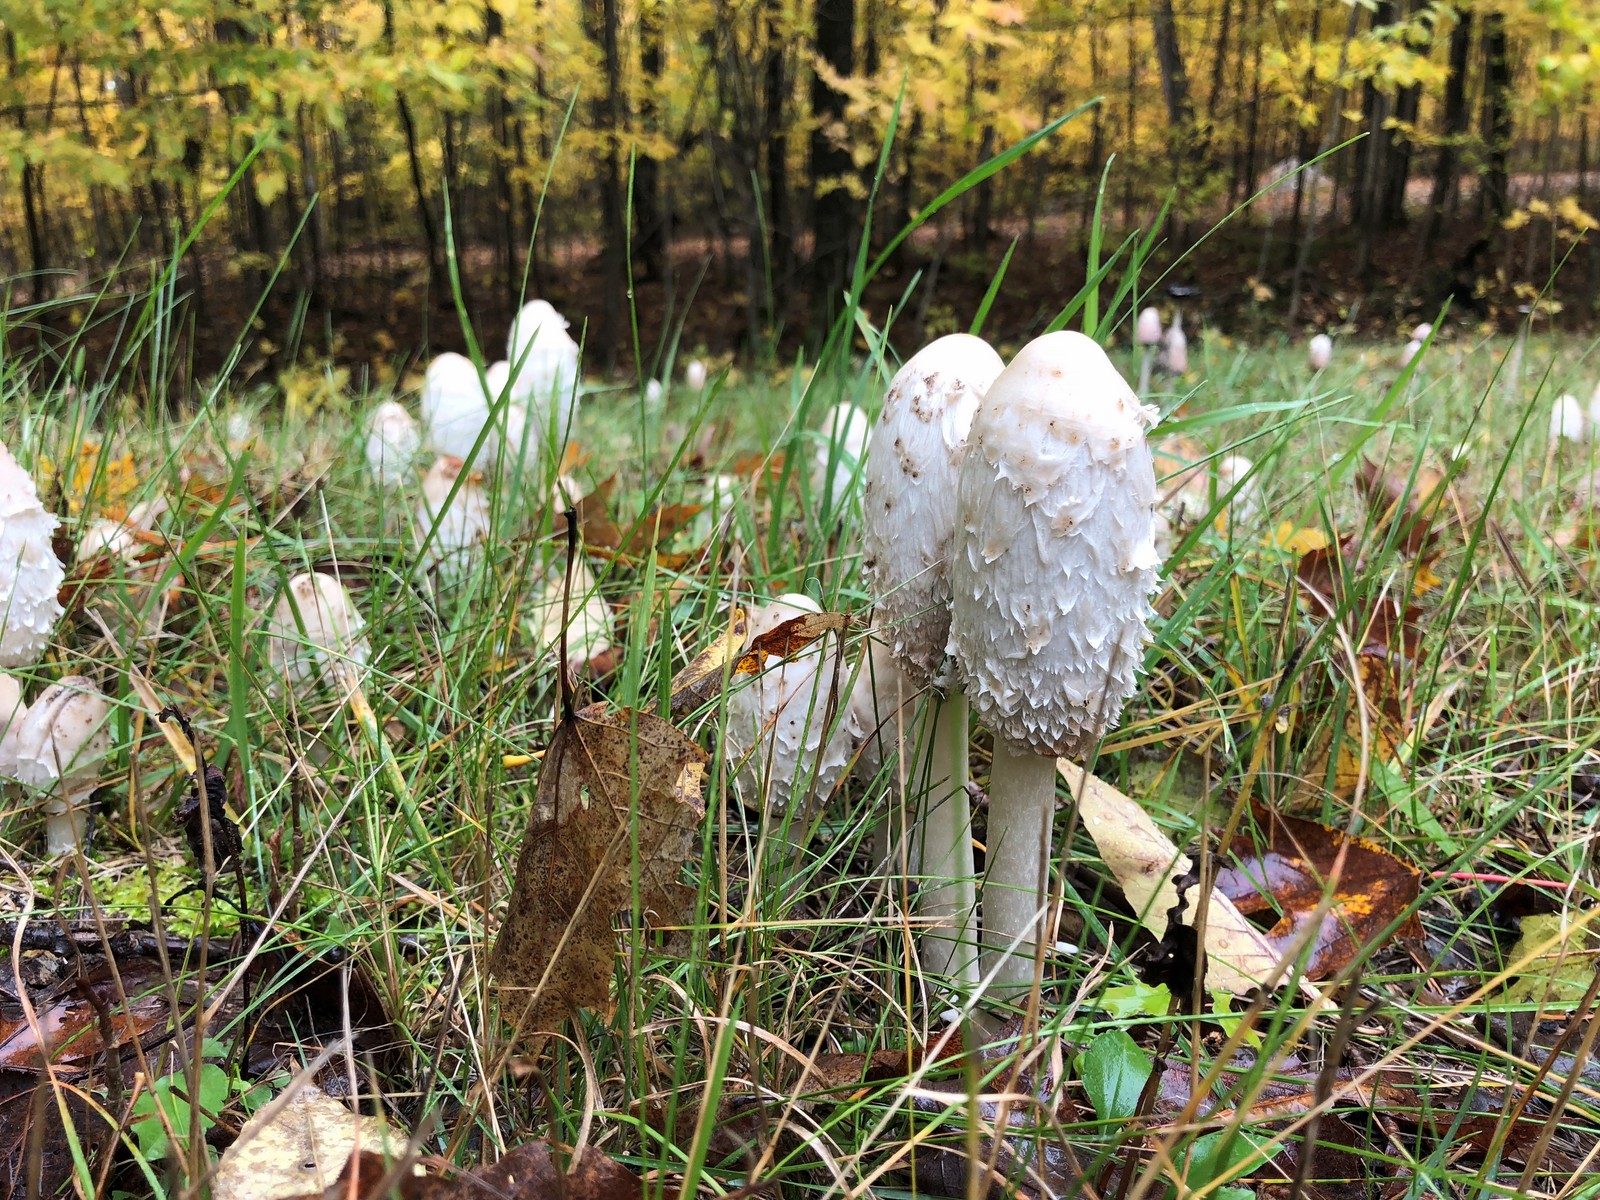 201810101101194 Shaggy Mane Mushroom (Coprinus comatus) mushrooms - Manitoulin Island, ON.jpg